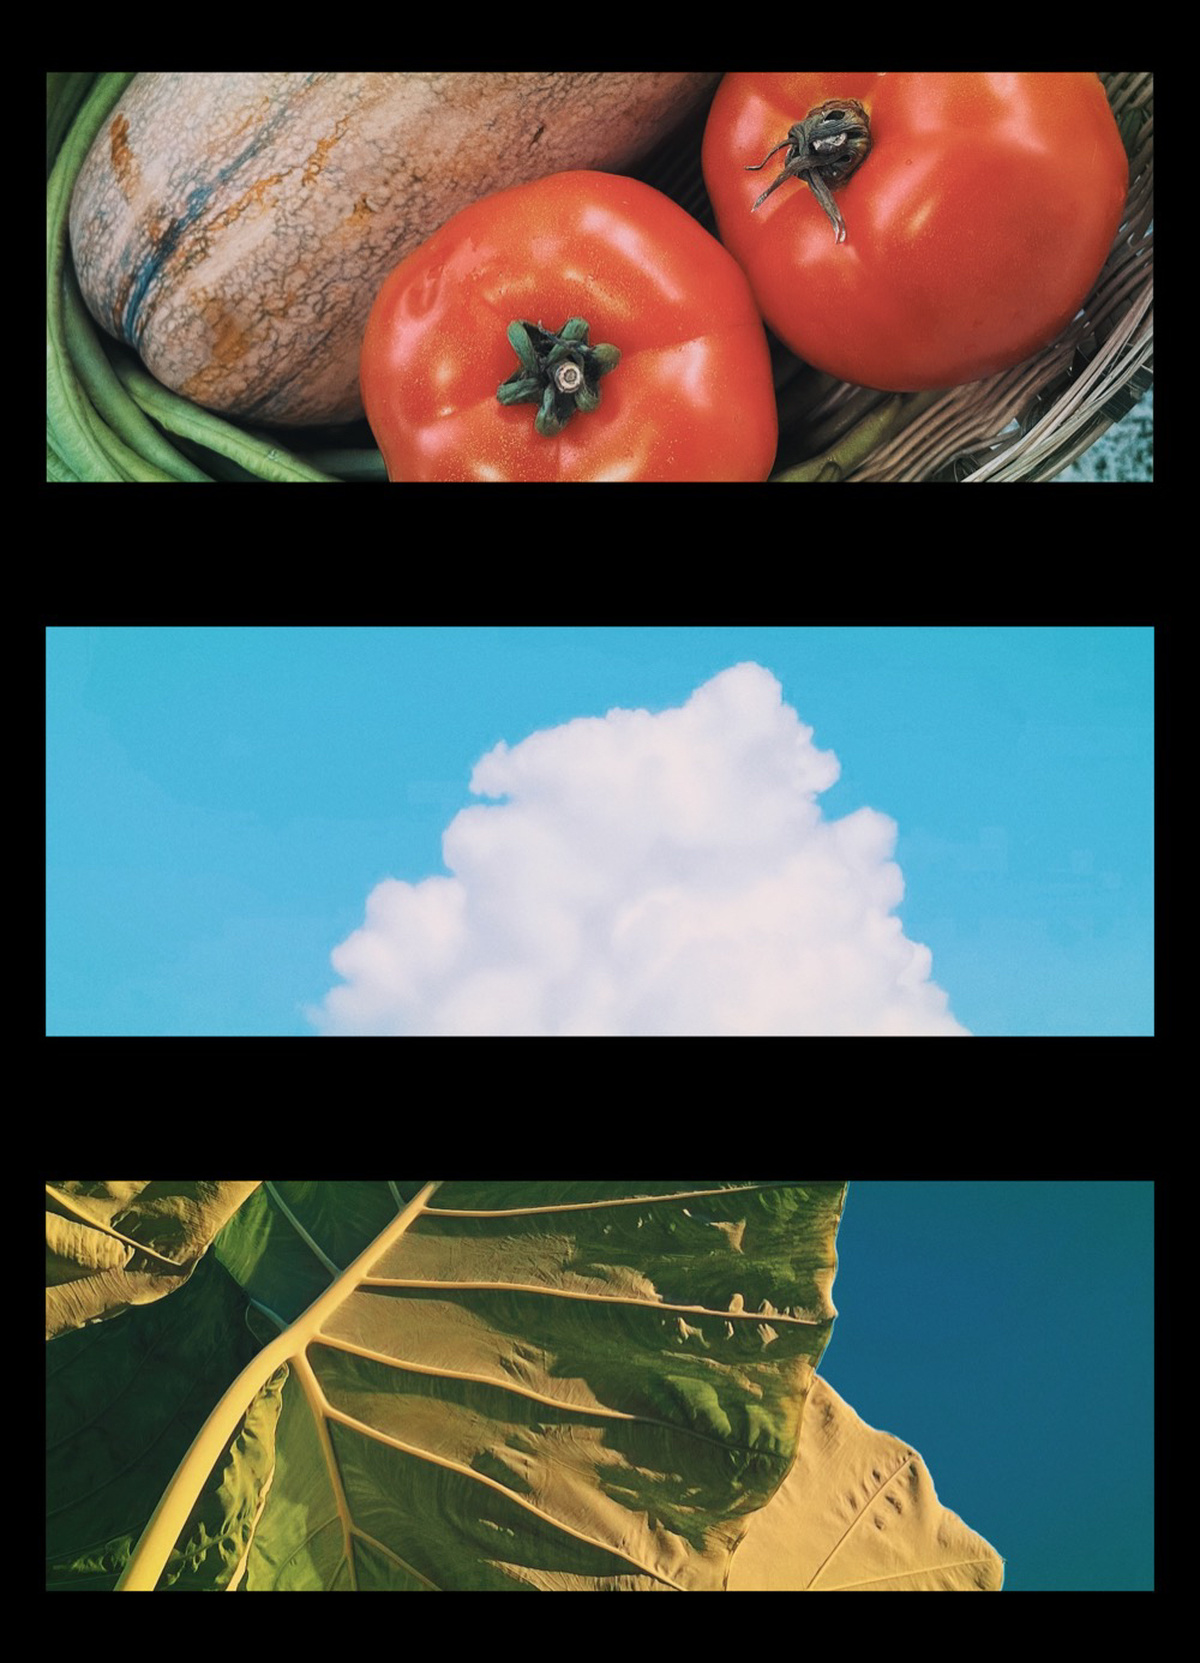 照片拼贴展示了一些番茄和蓝天 云朵